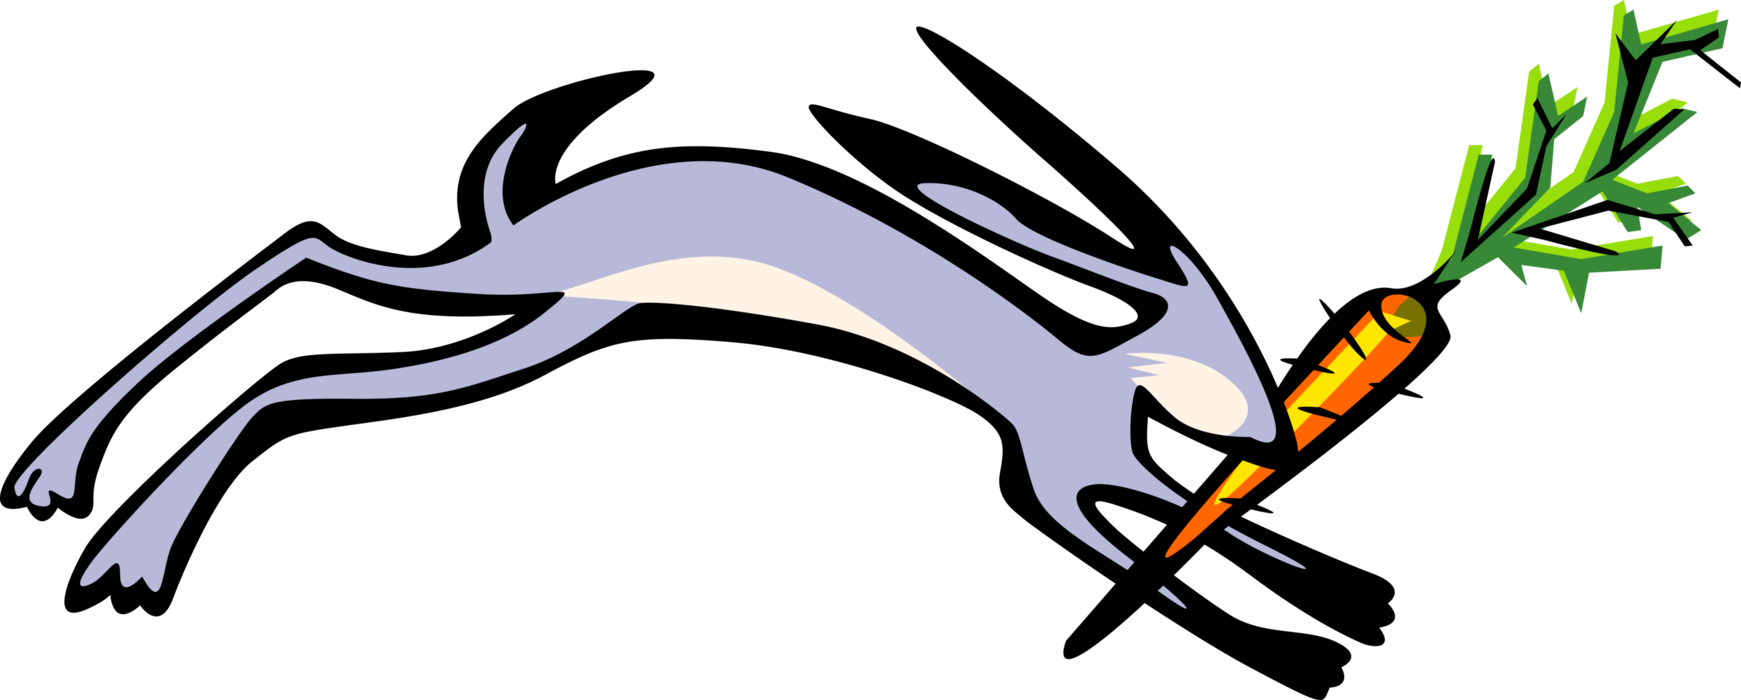 Vector Illustration of Small Mammal Rabbit Running with Carrot